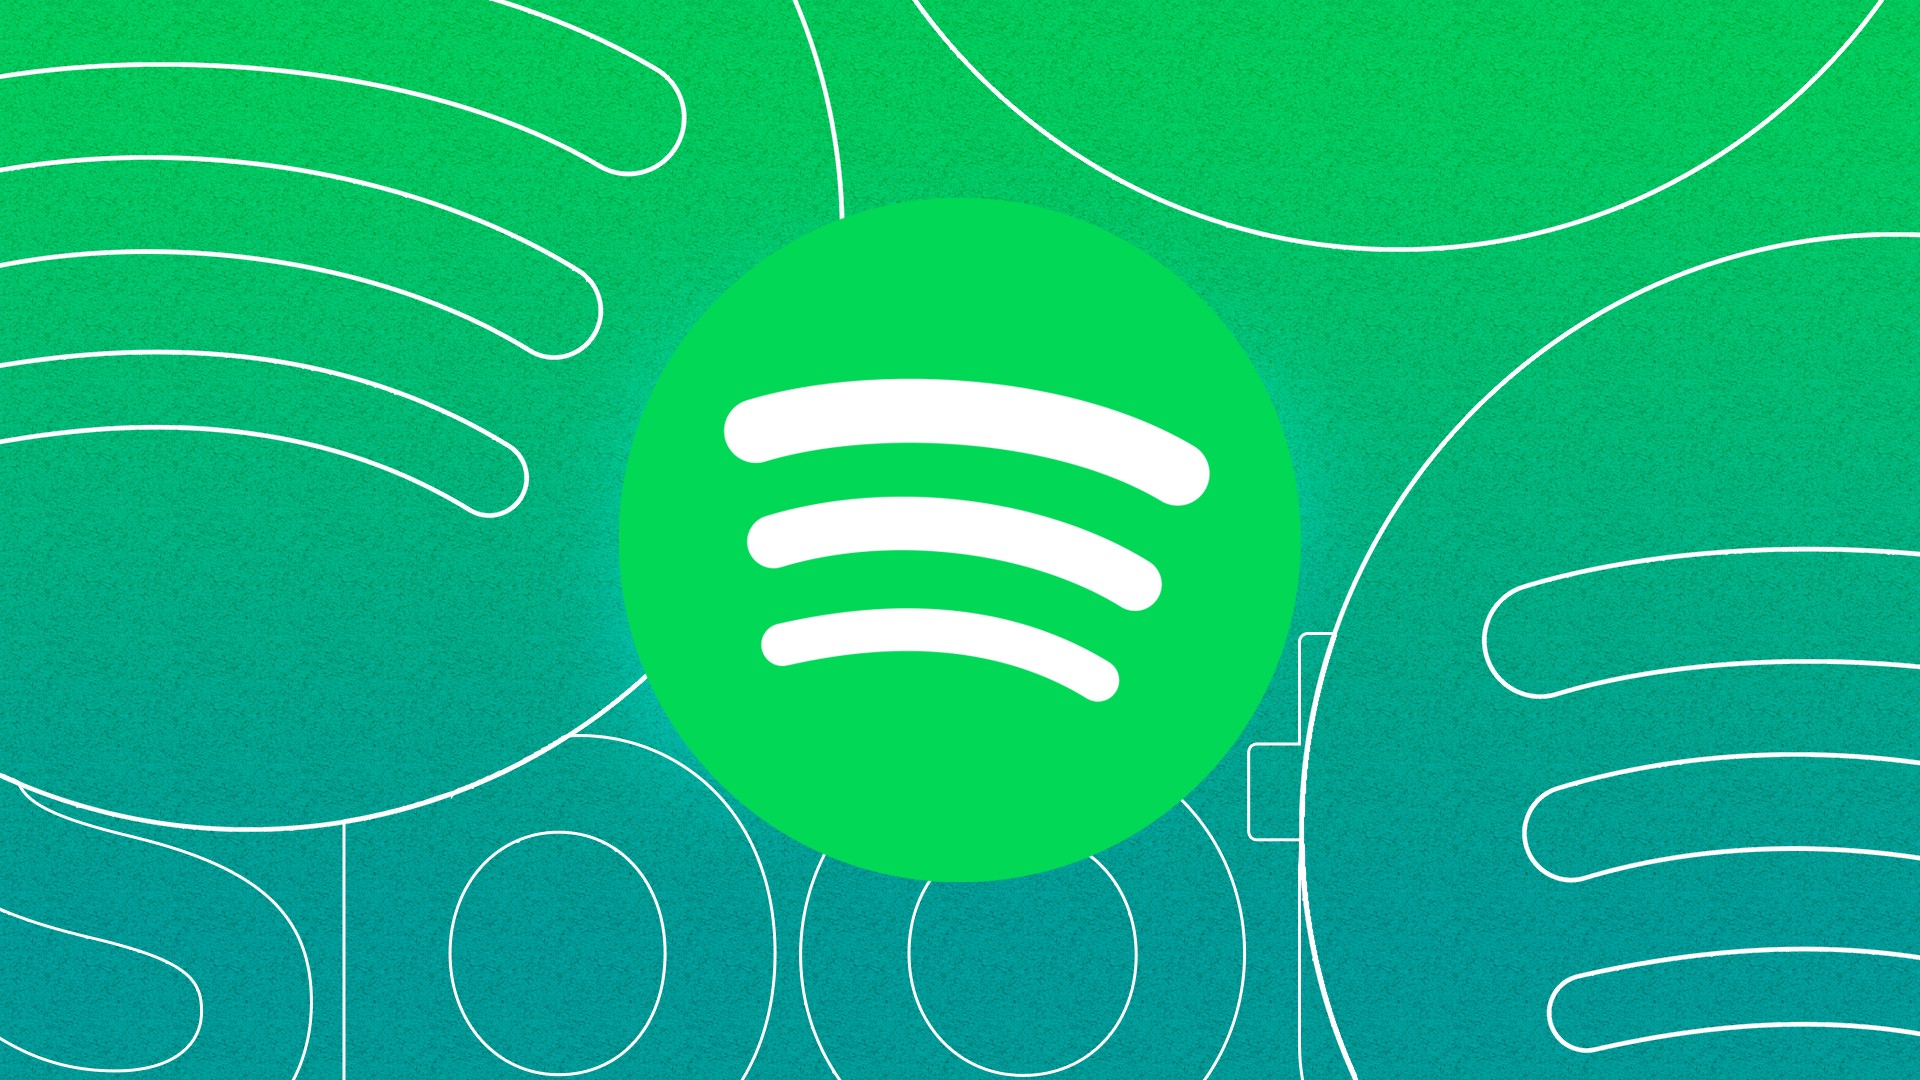 Spotify alcanza 433 millones de usuarios activos mensuales y supera las expectativas